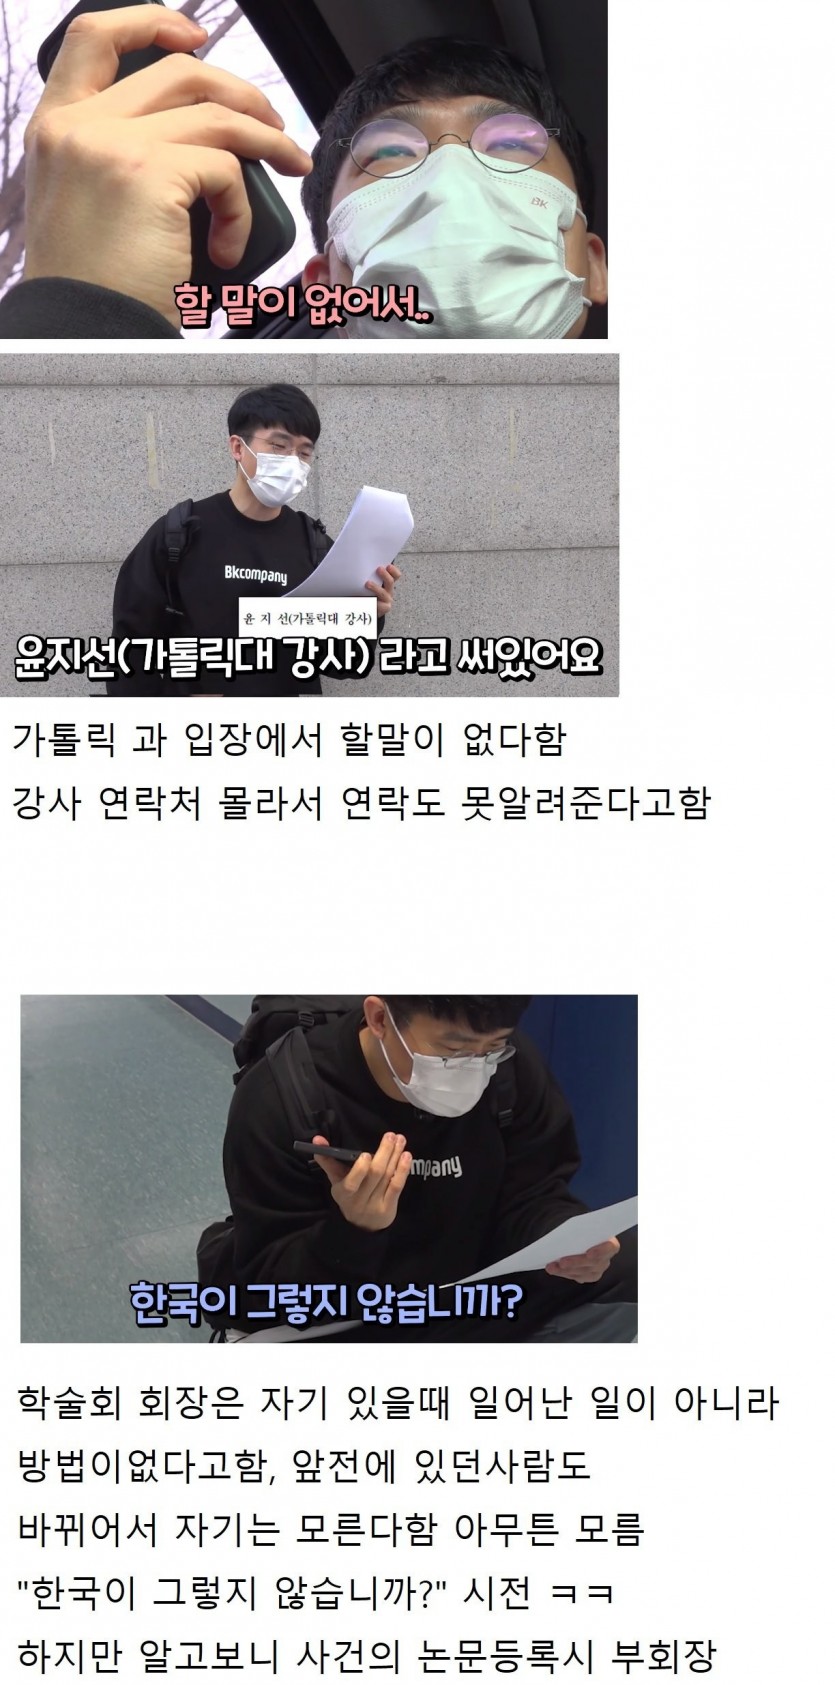 남성혐오 논문에 박제된 유튜버 + 근황